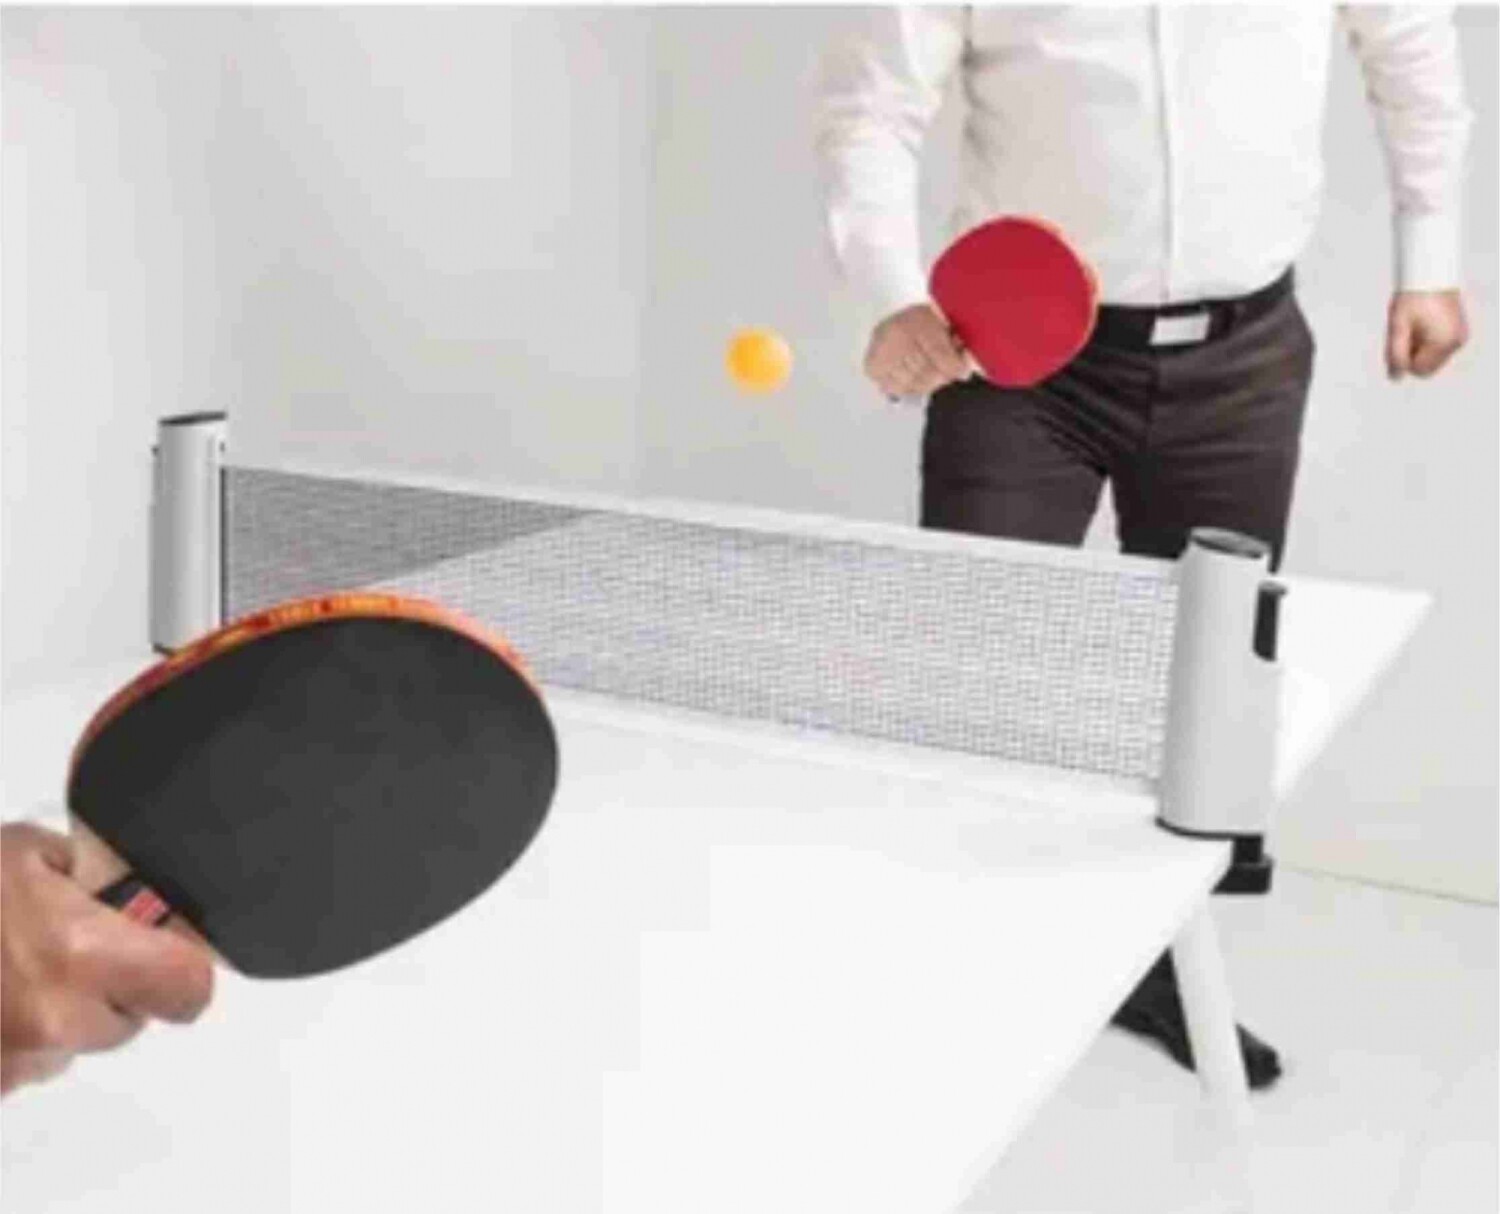 Red De Ping Pong Soporte Retractil Adaptable Cualquier Mesa